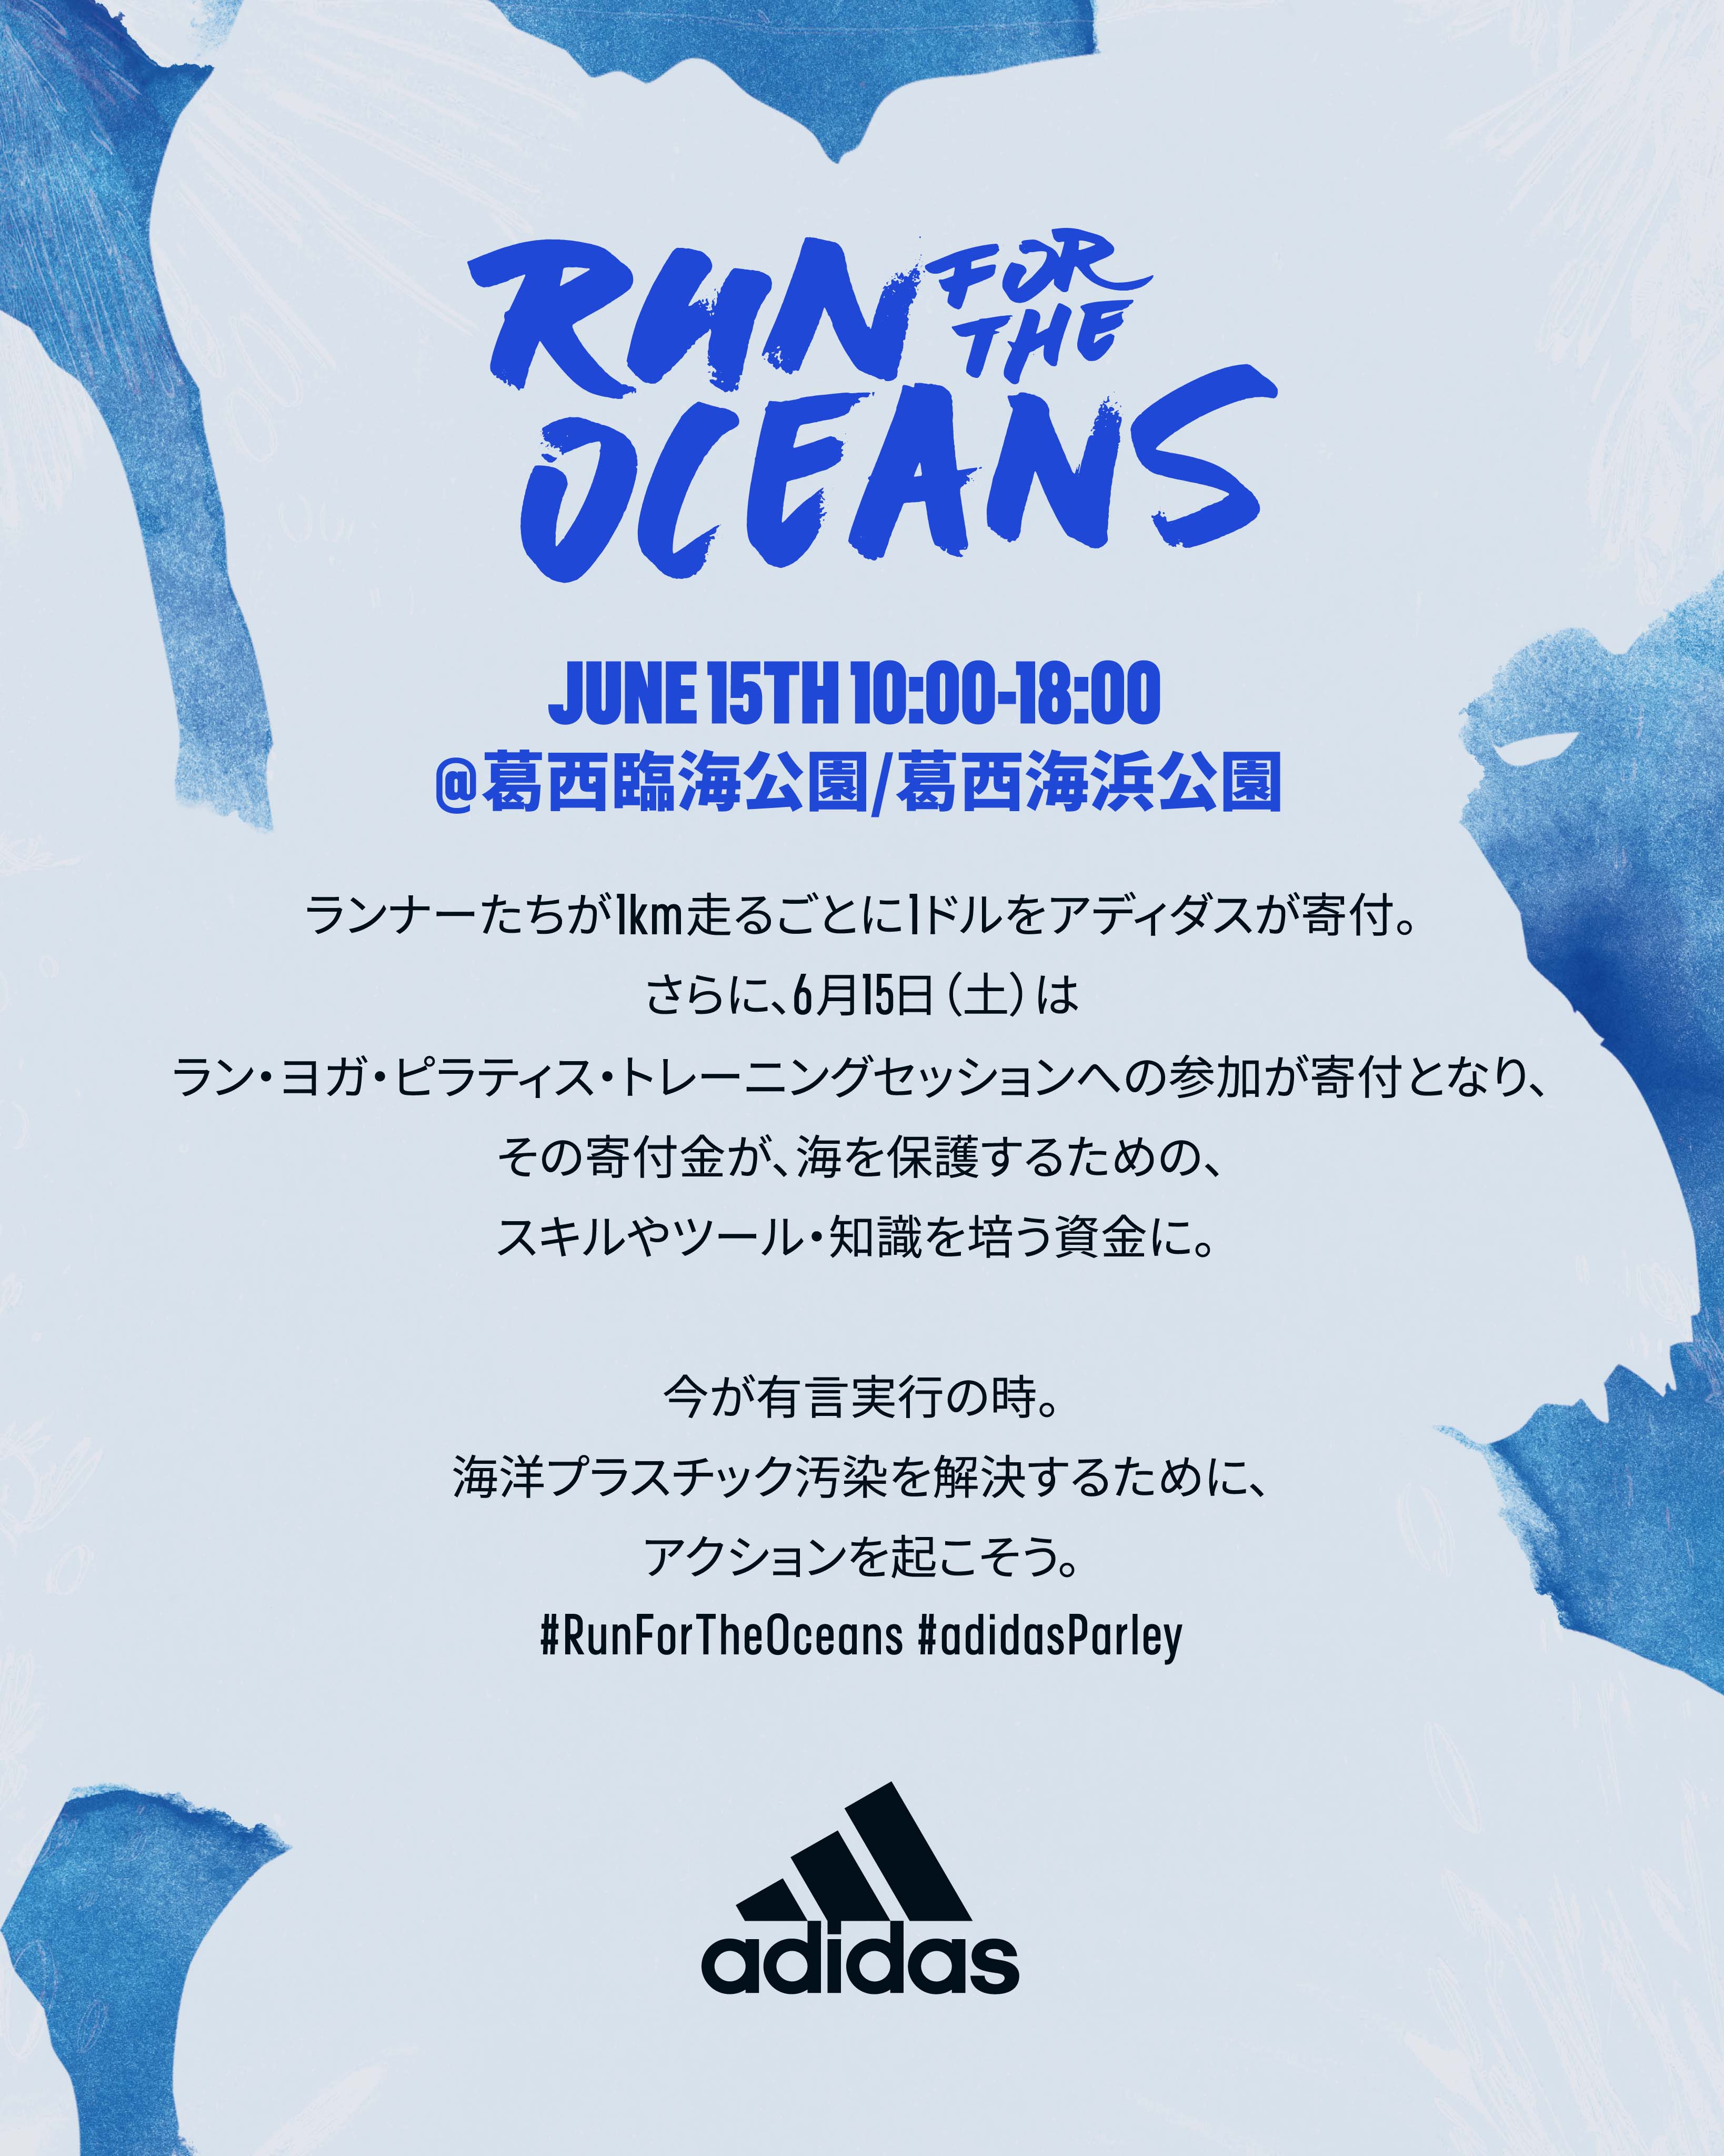 豪華ゲストを招いた Run For The Oceans 過去最大規模の取り組み スポーツの力を通じて海洋プラスチック汚染に立ち向かう Run For The Oceans In Tokyo アディダス ジャパン株式会社のプレスリリース